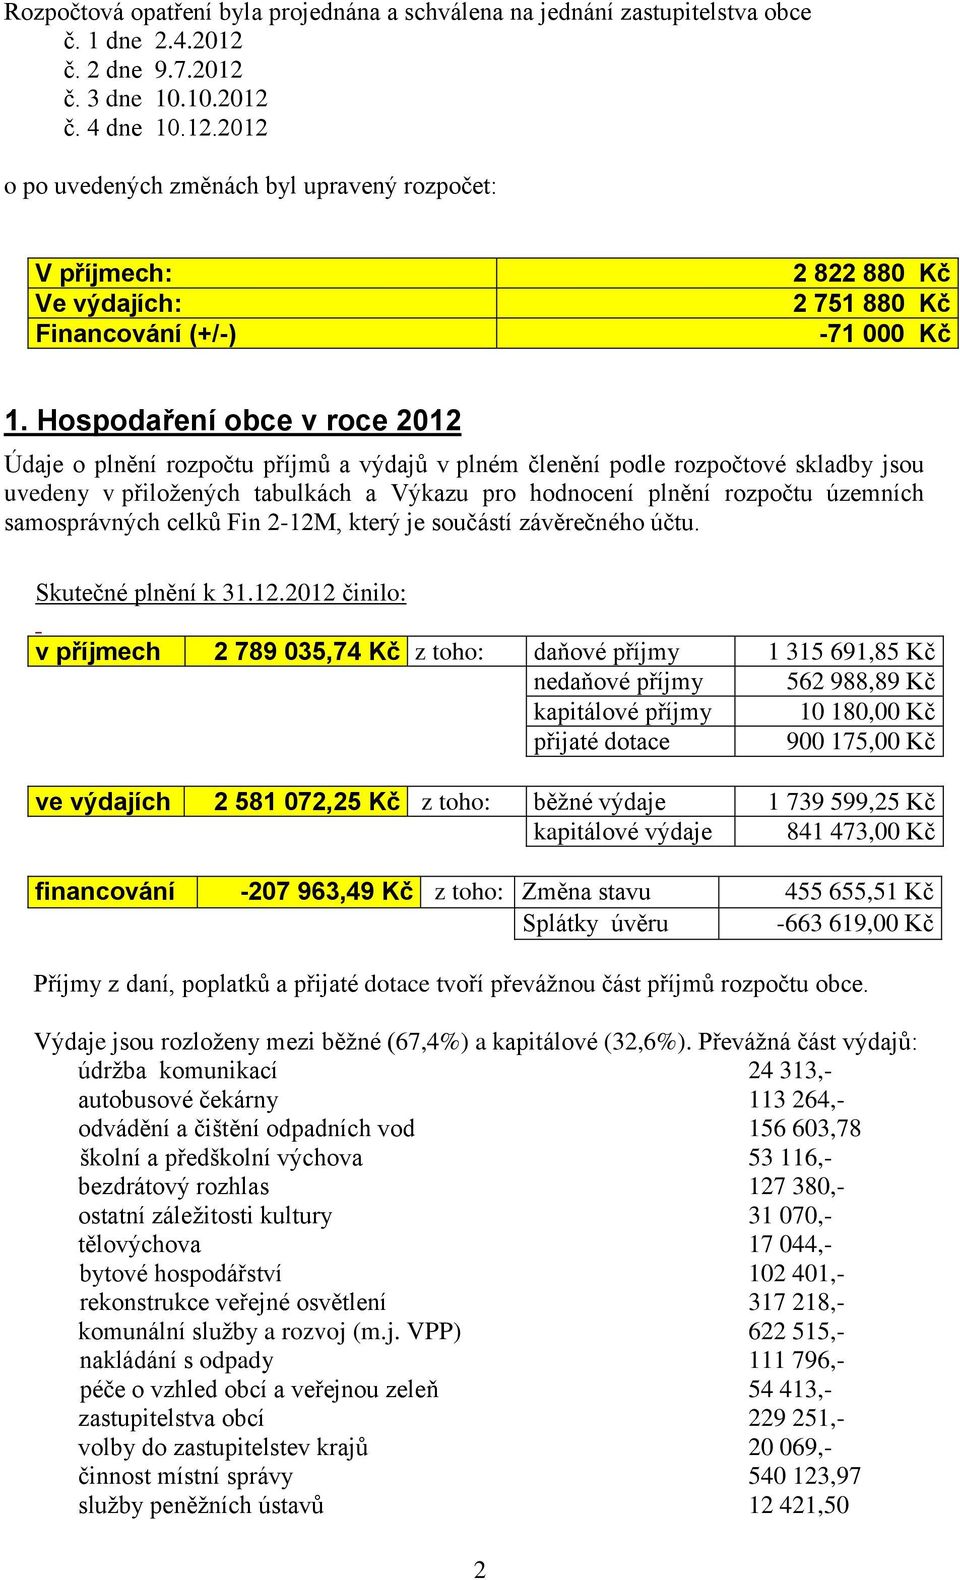 Hospodaření obce v roce 2012 Údaje o plnění rozpočtu příjmů a výdajů v plném členění podle rozpočtové skladby jsou uvedeny v přiložených tabulkách a Výkazu pro hodnocení plnění rozpočtu územních